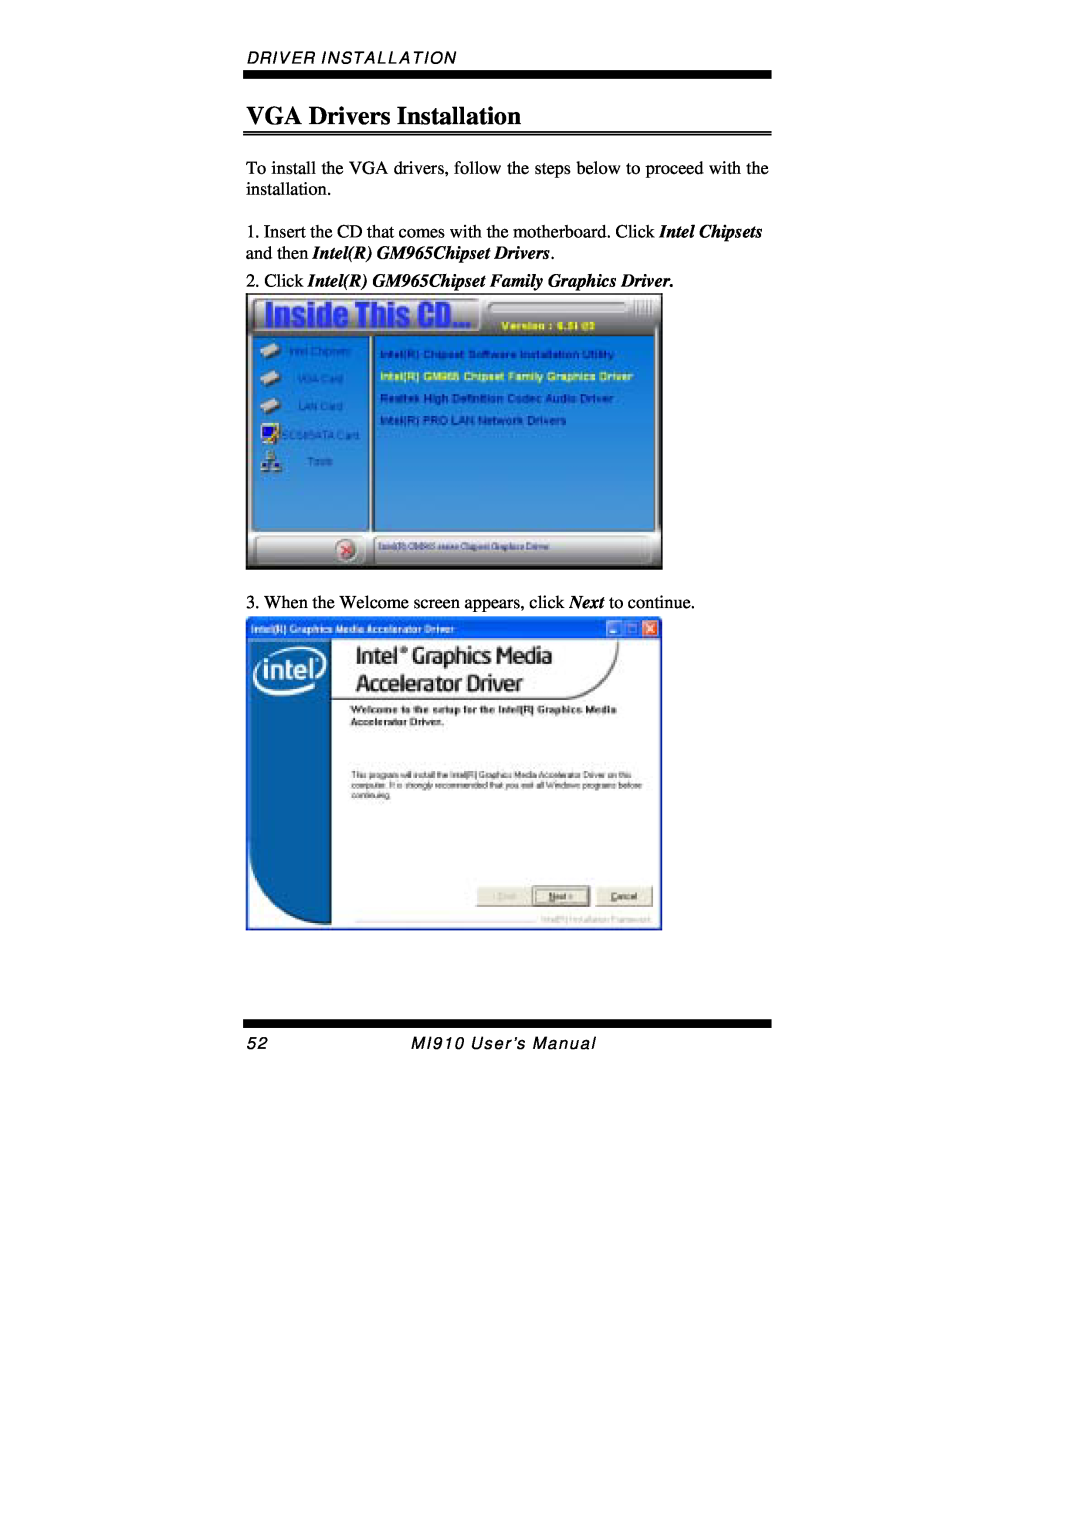 Intel MI910F user manual VGA Drivers Installation, Driver Installation, MI910 User’s Manual 